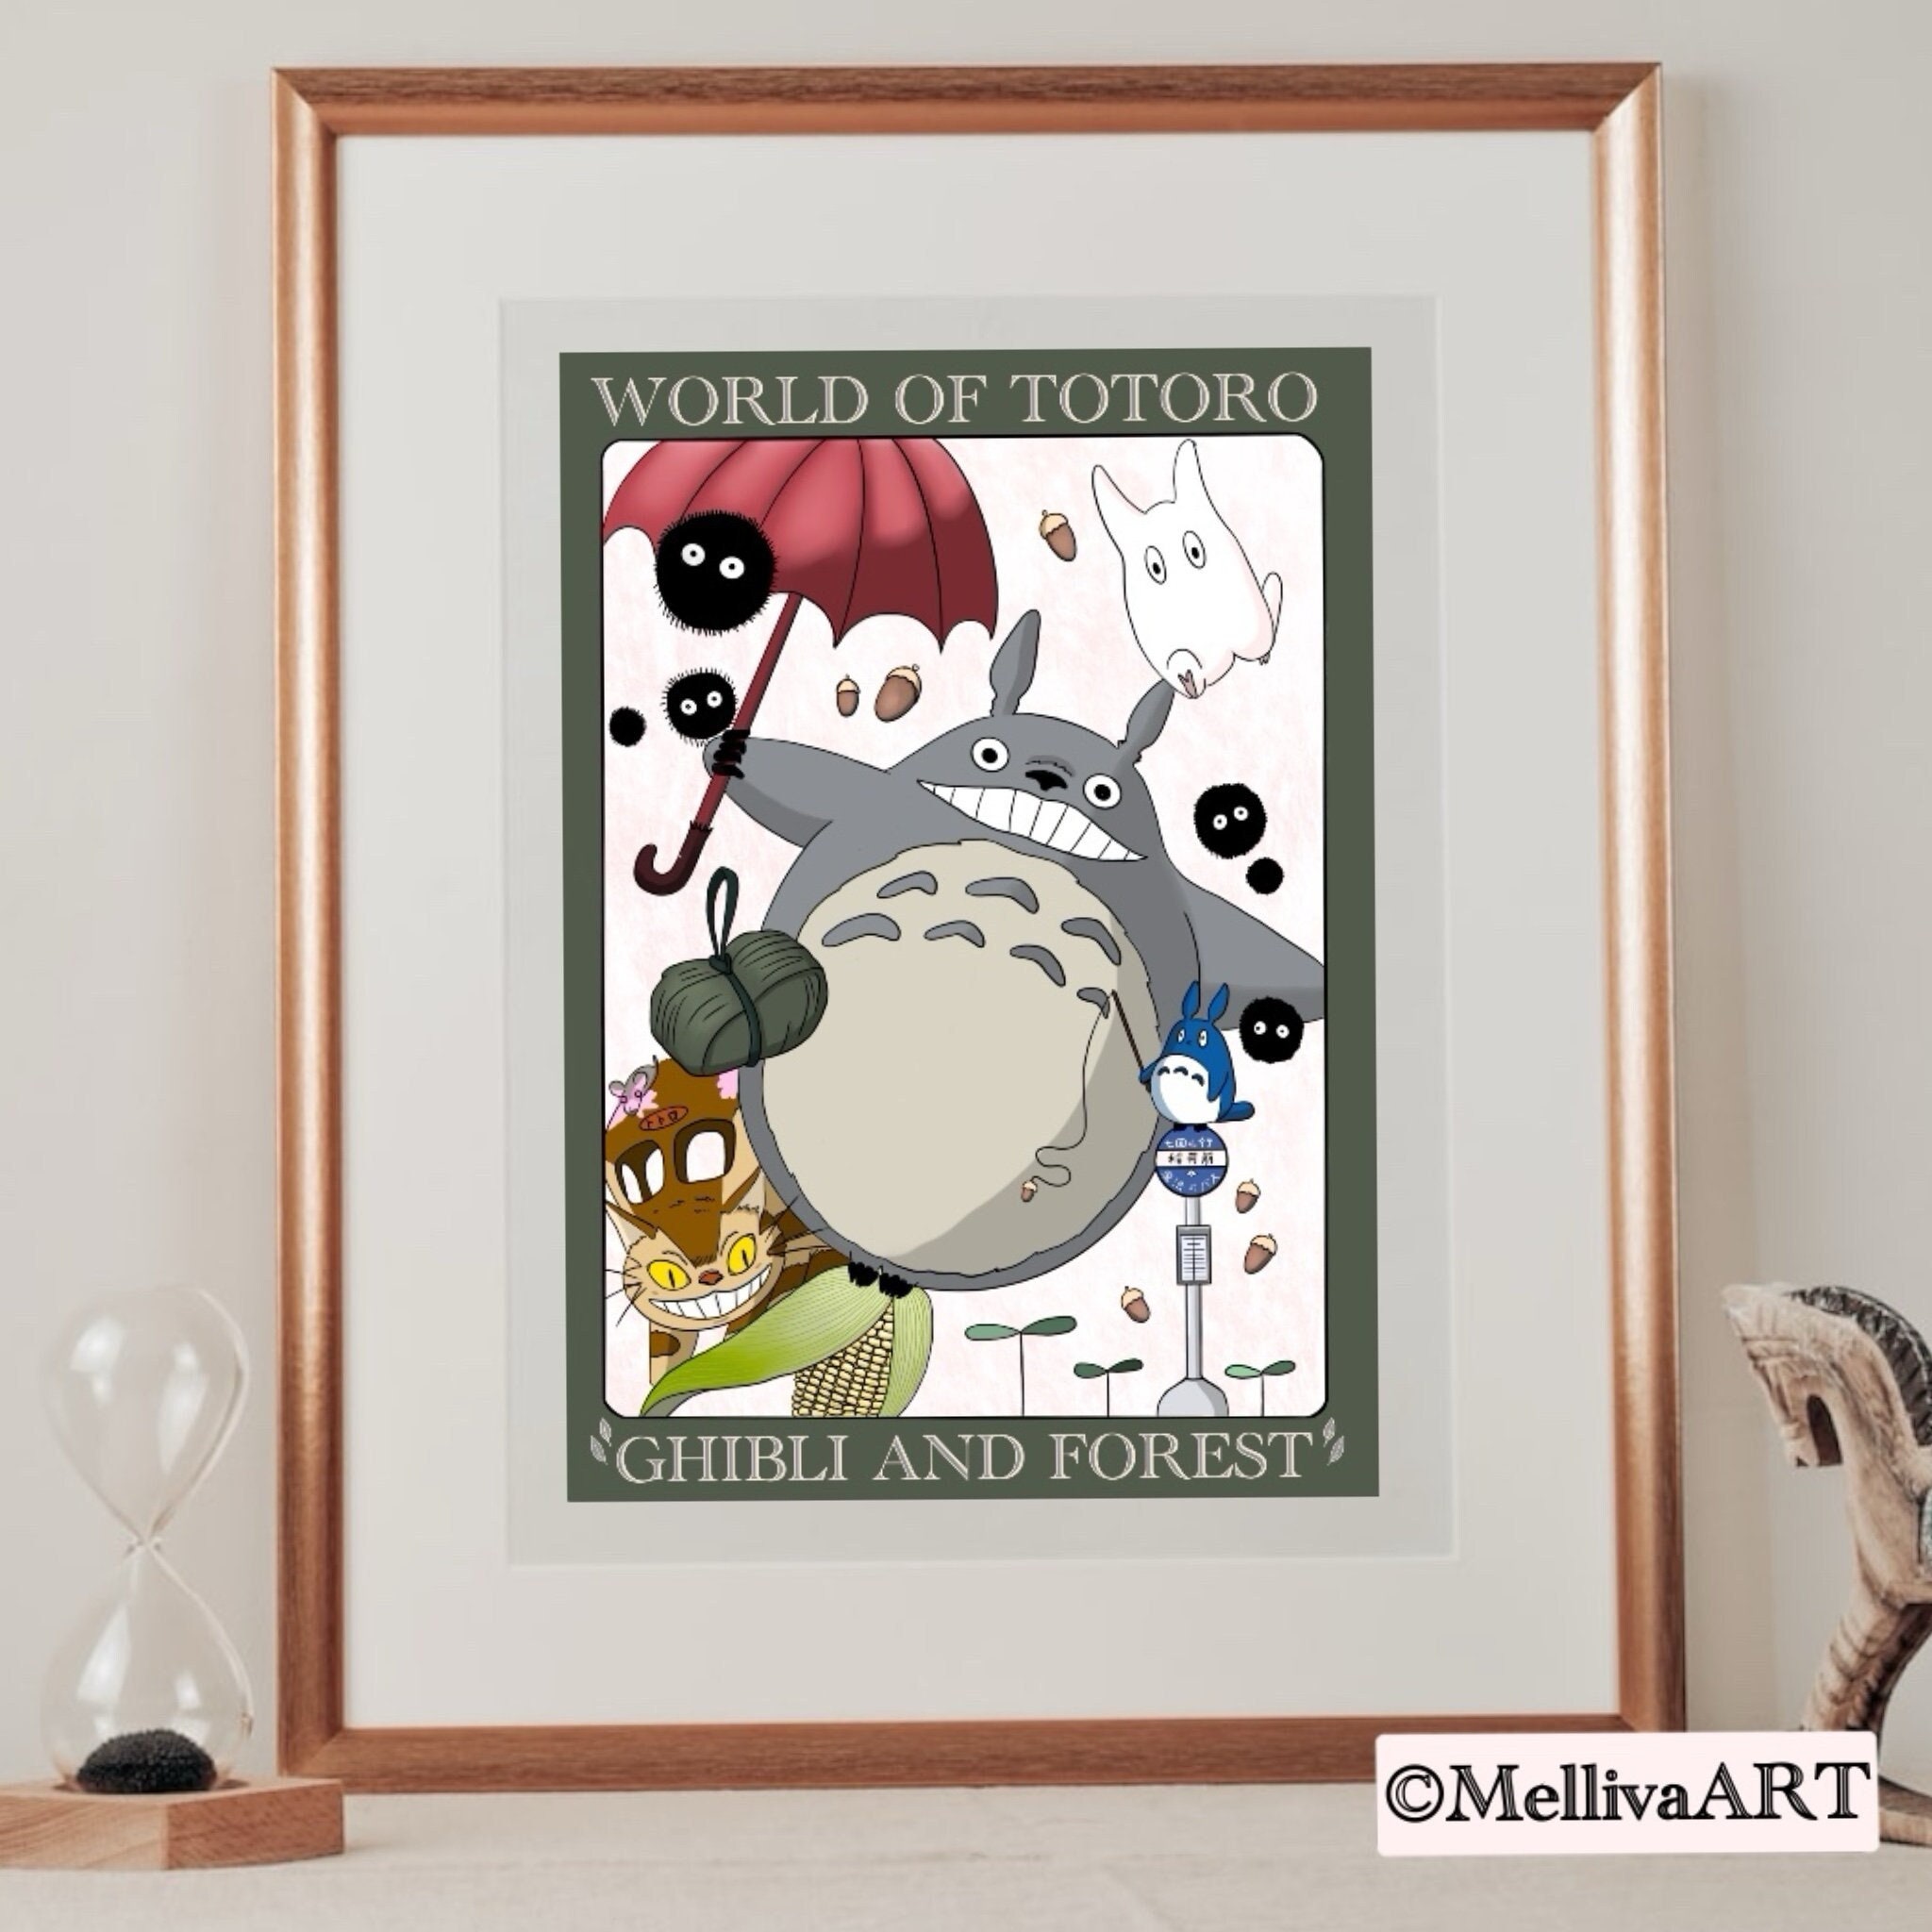 10€ sur Poster lot of 5 Les films du Studio Ghibli Mon voisin Totoro Le  Voyage de Chihiro Princesse Mononoké Le Château dans le ciel Kiki la petite  sorcière 51 x 35,5